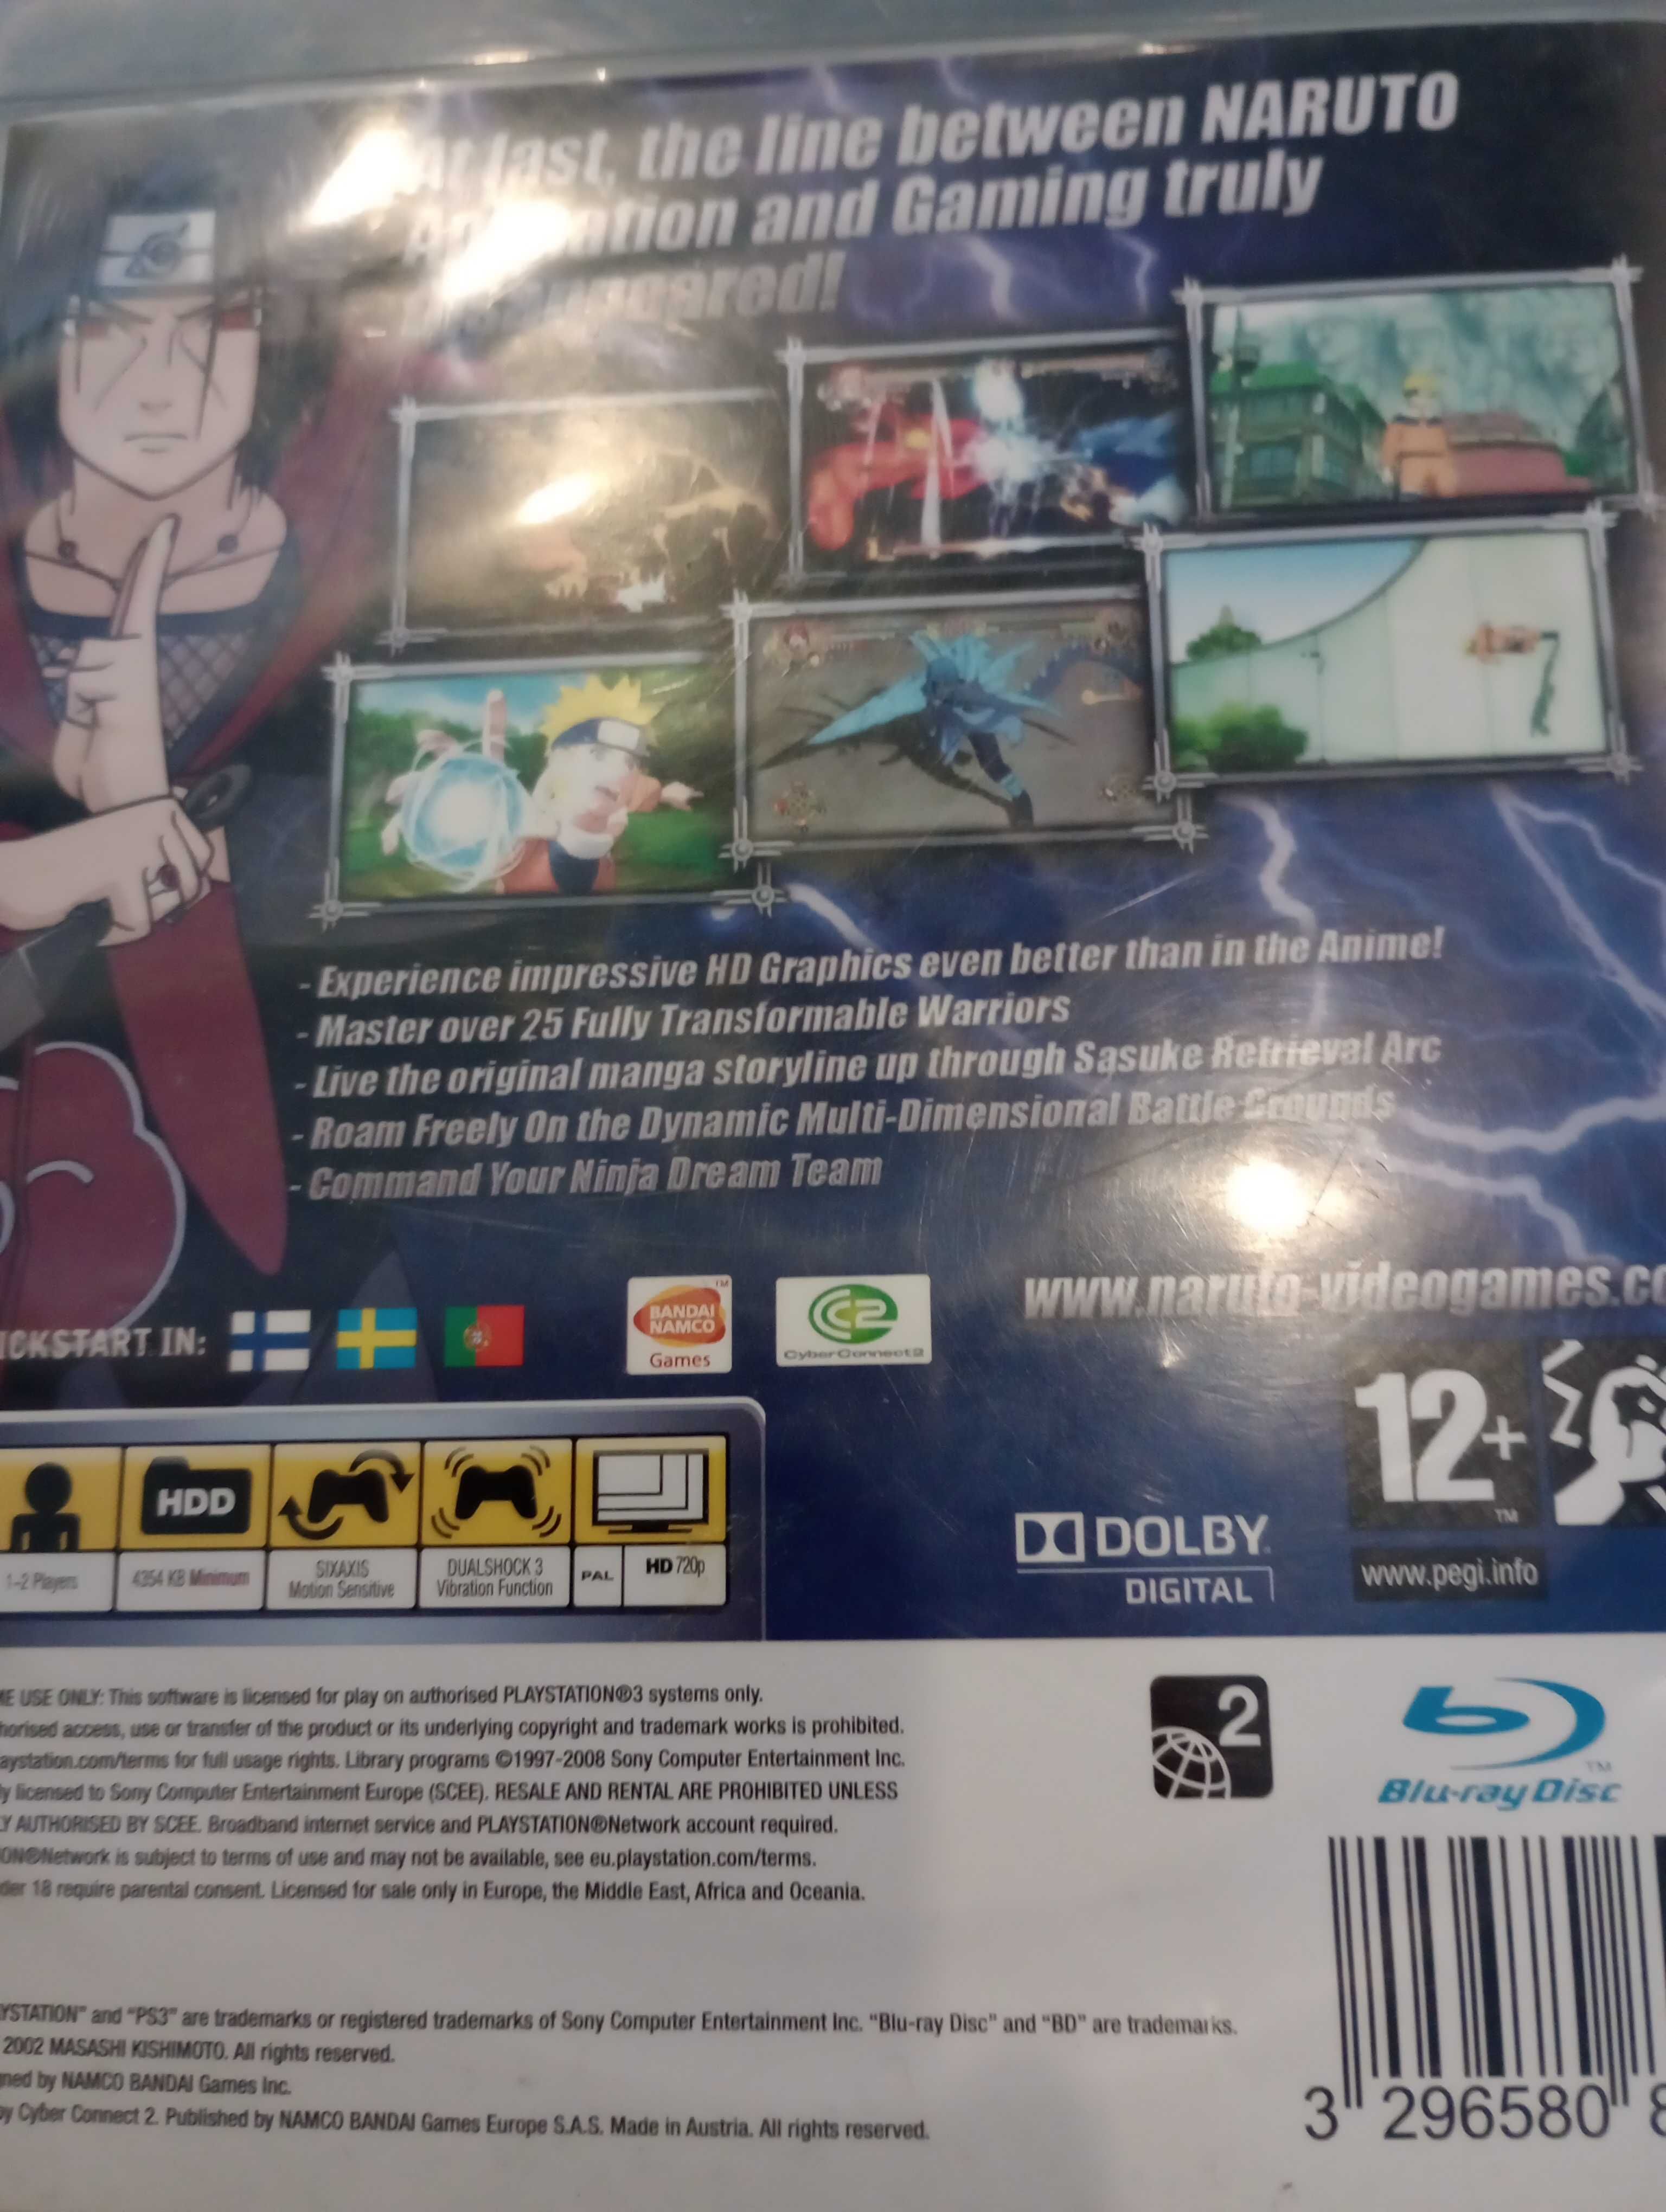 PS3 Naruto Ultimate Ninja Storm PlayStation 3